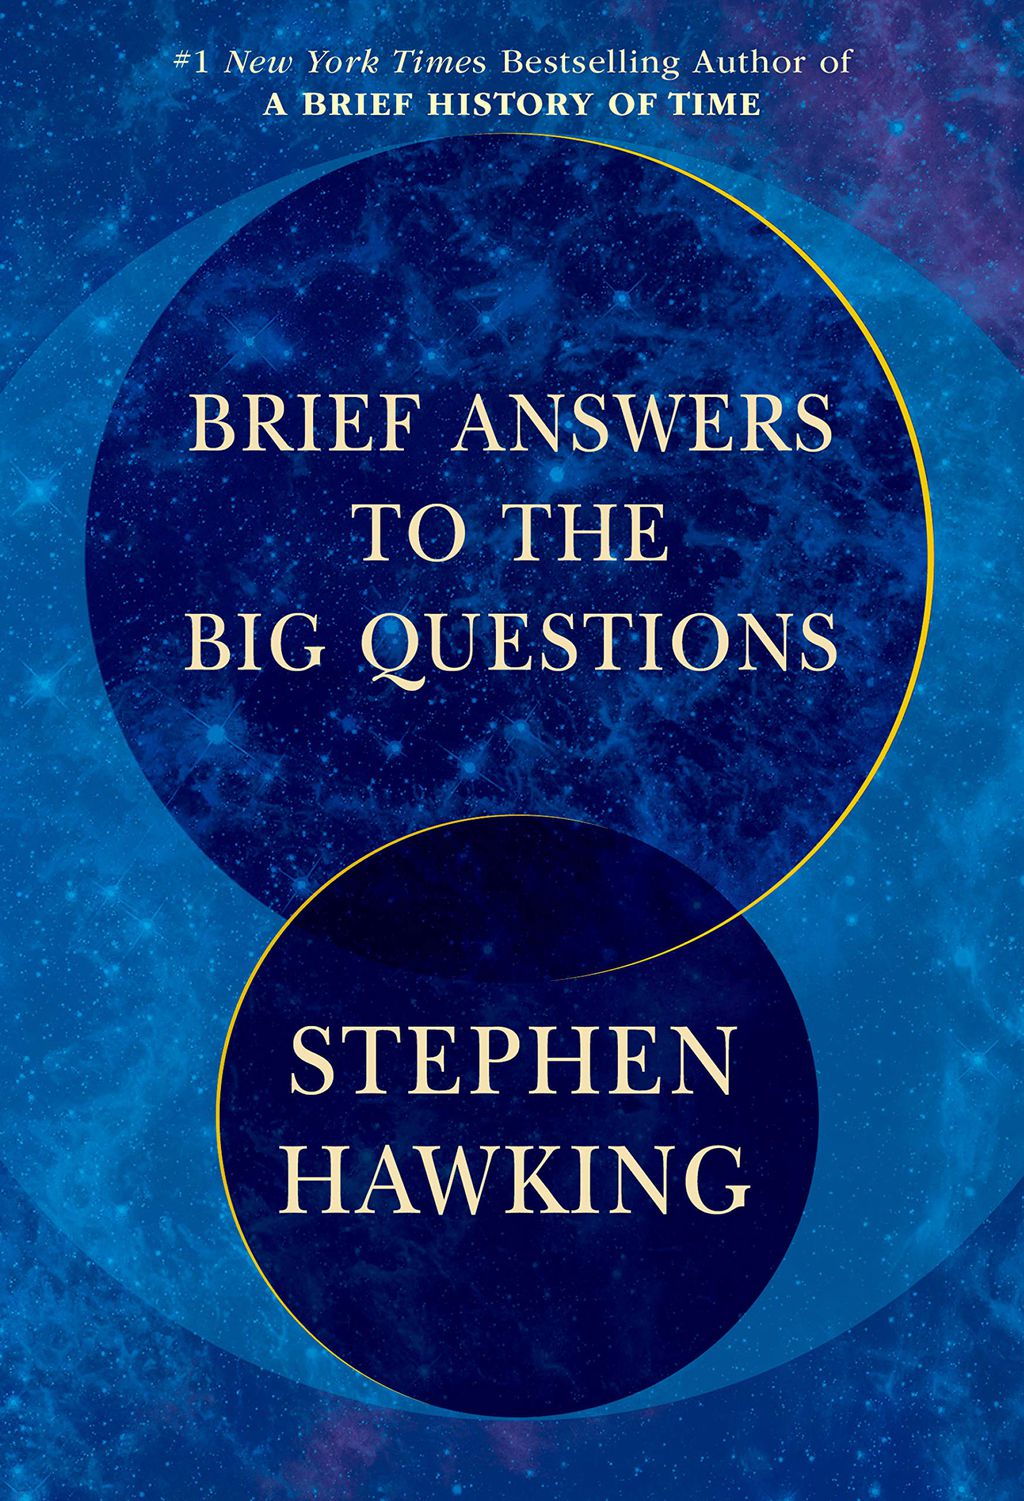 "Não há possibilidade de um Deus em nosso universo", acreditava Stephen Hawking